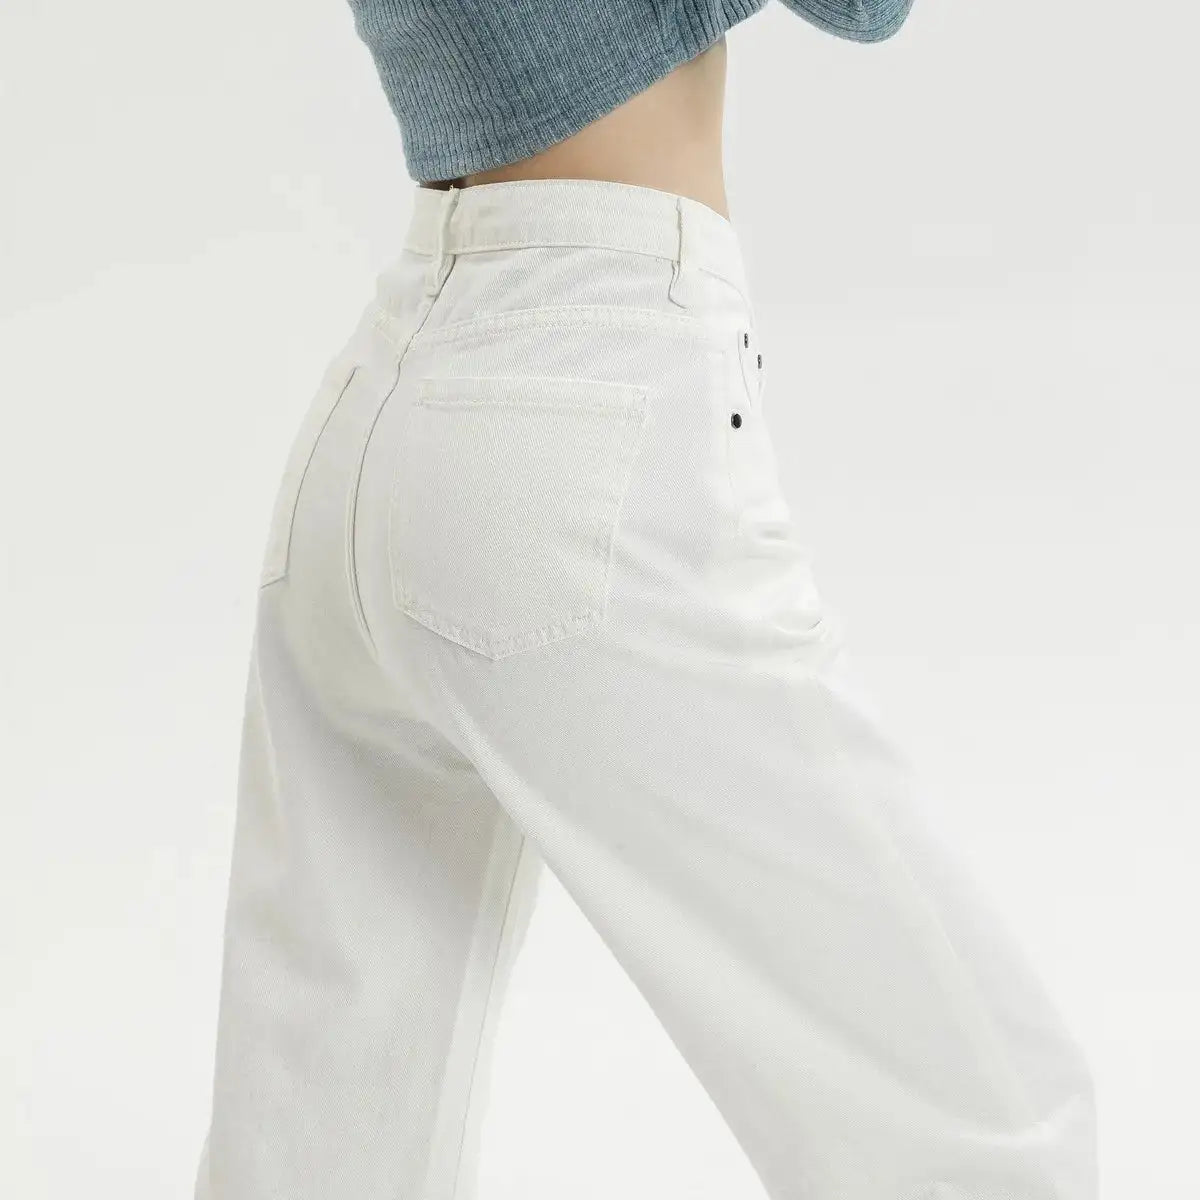 Spodnie dżinsowe z prostą nogawką